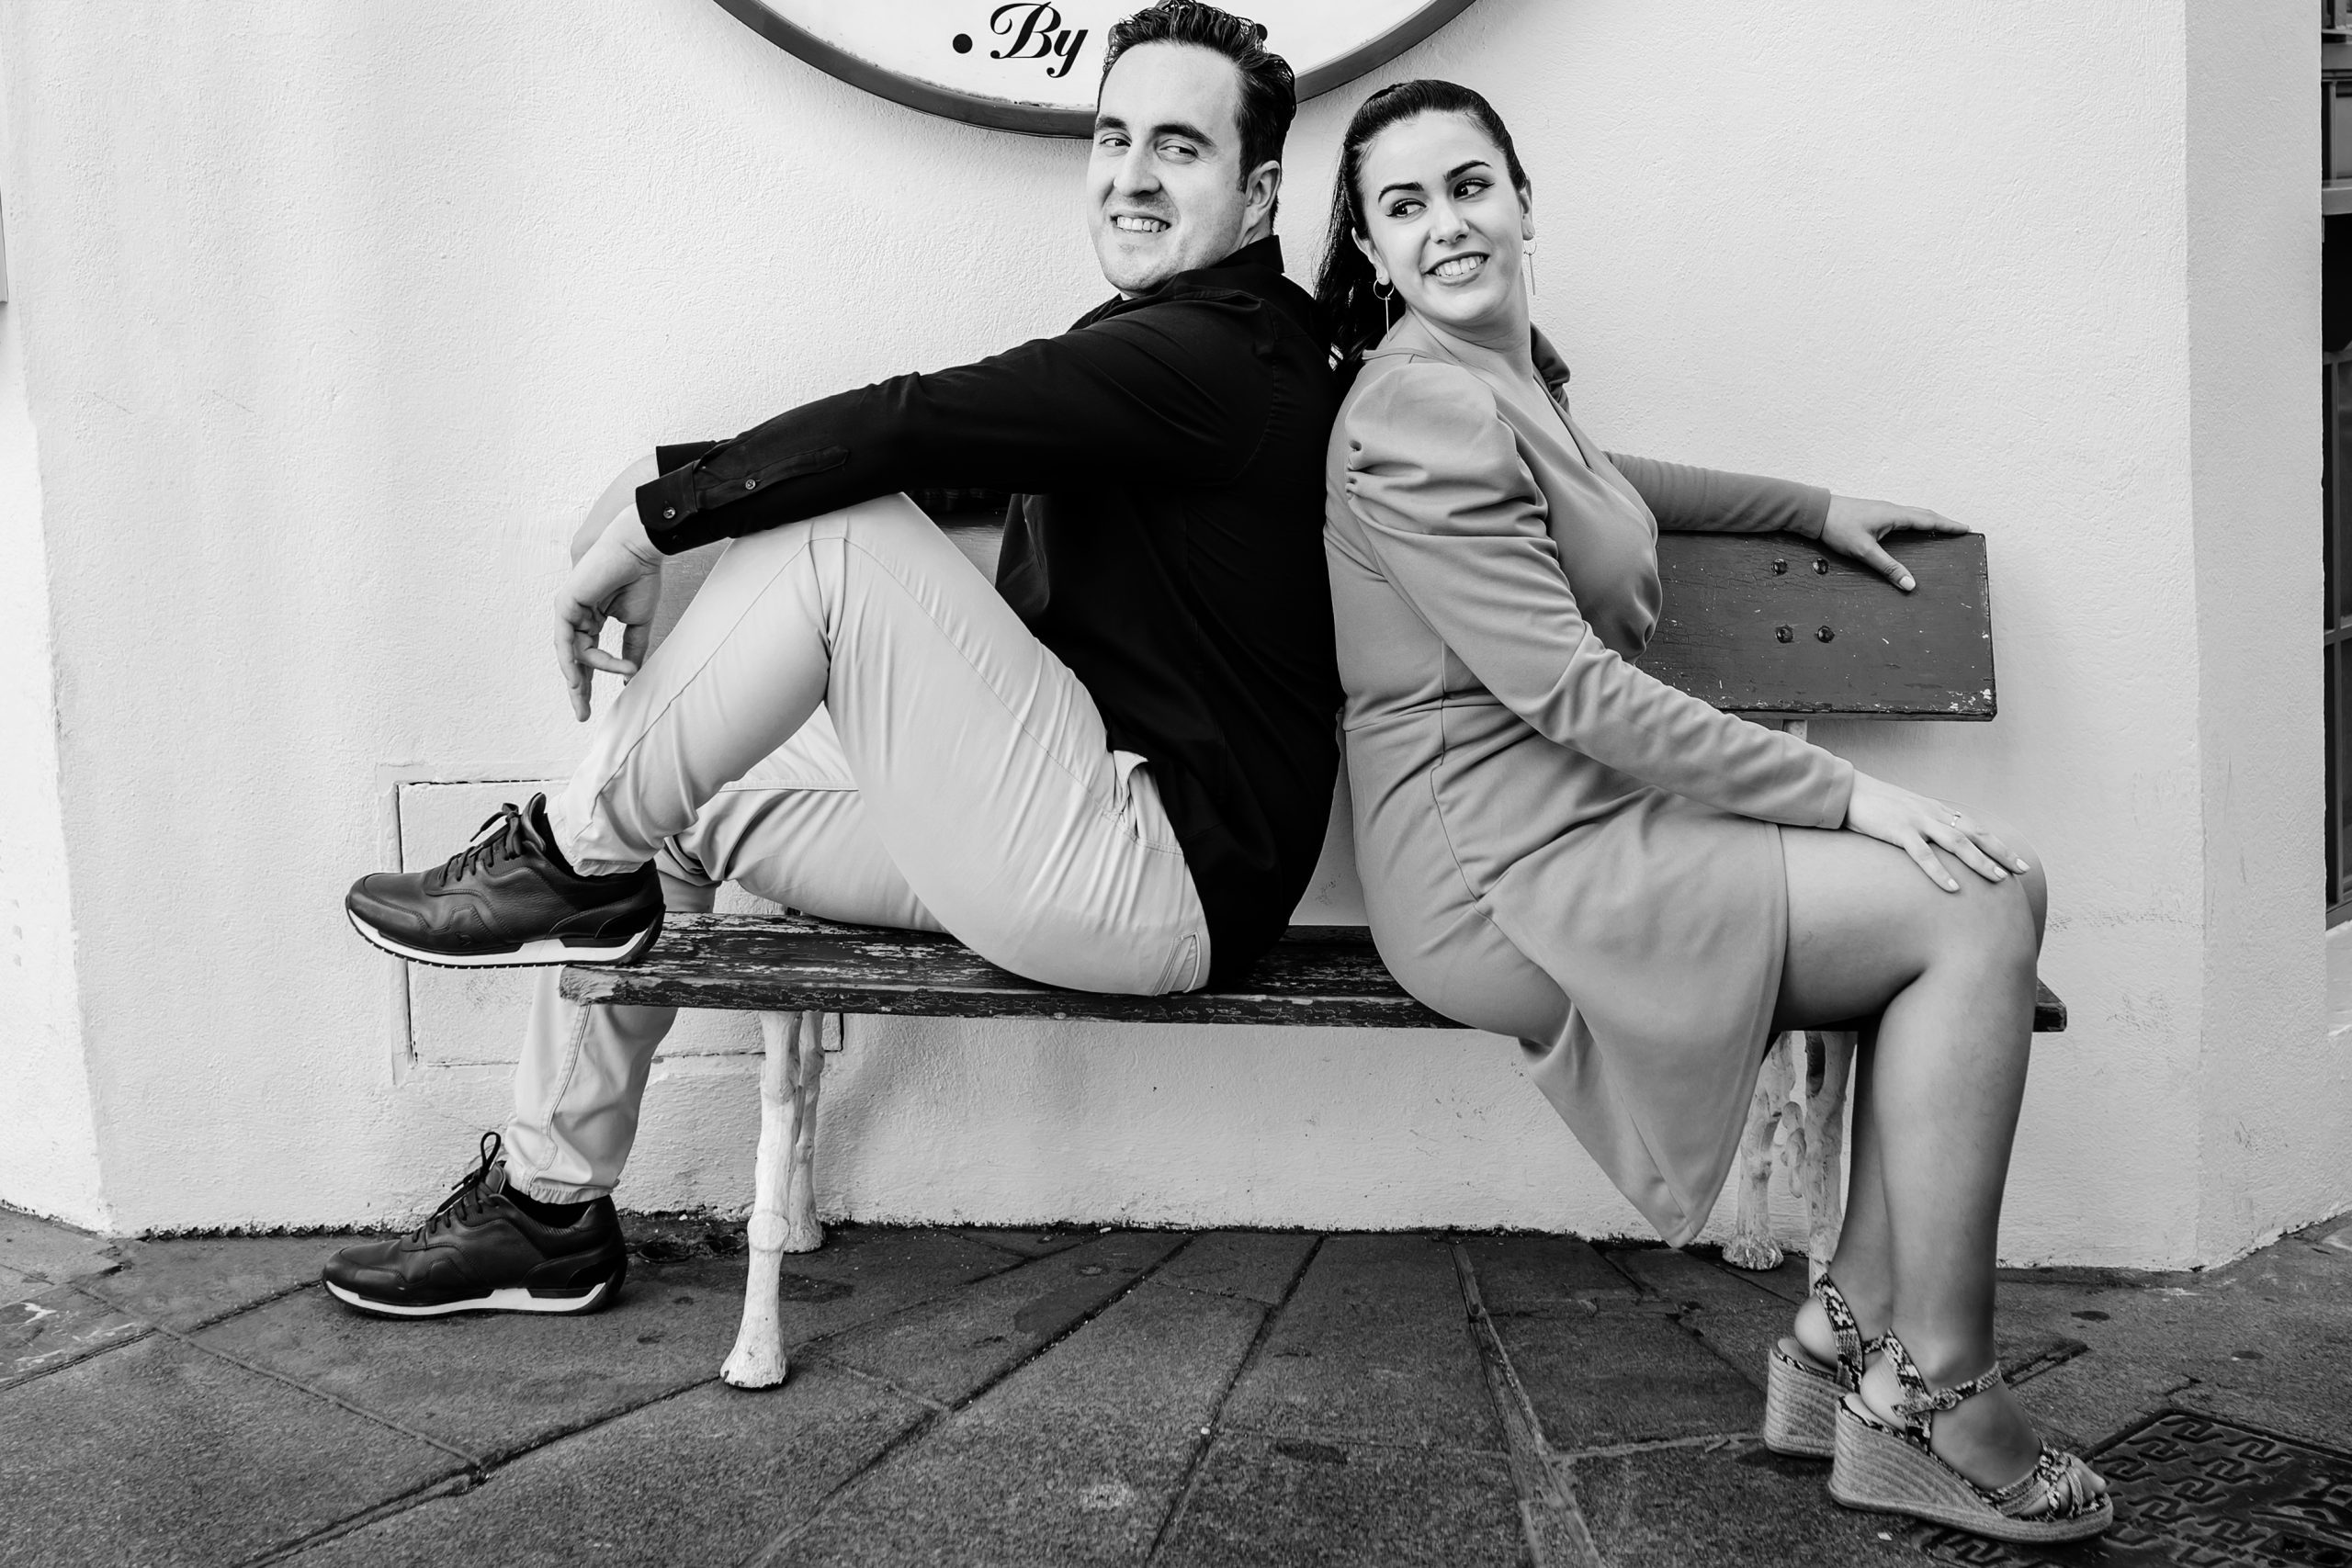 Fotografía en blanco y negro de una pareja sonriente